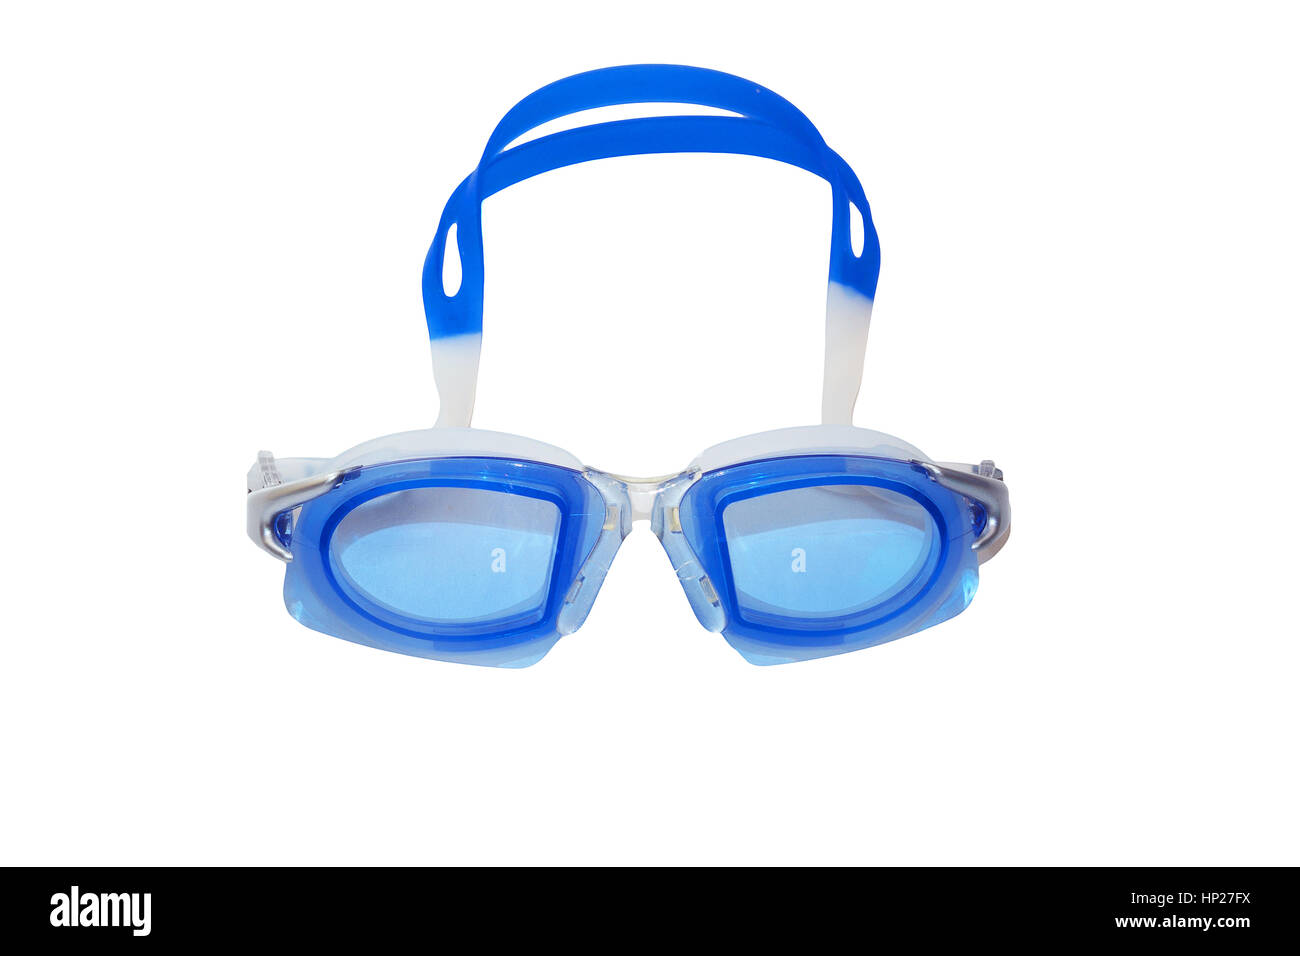 Gli occhiali per nuoto o nuotare gli occhiali per sport acquatici concetto, isolato su uno sfondo bianco. Foto Stock